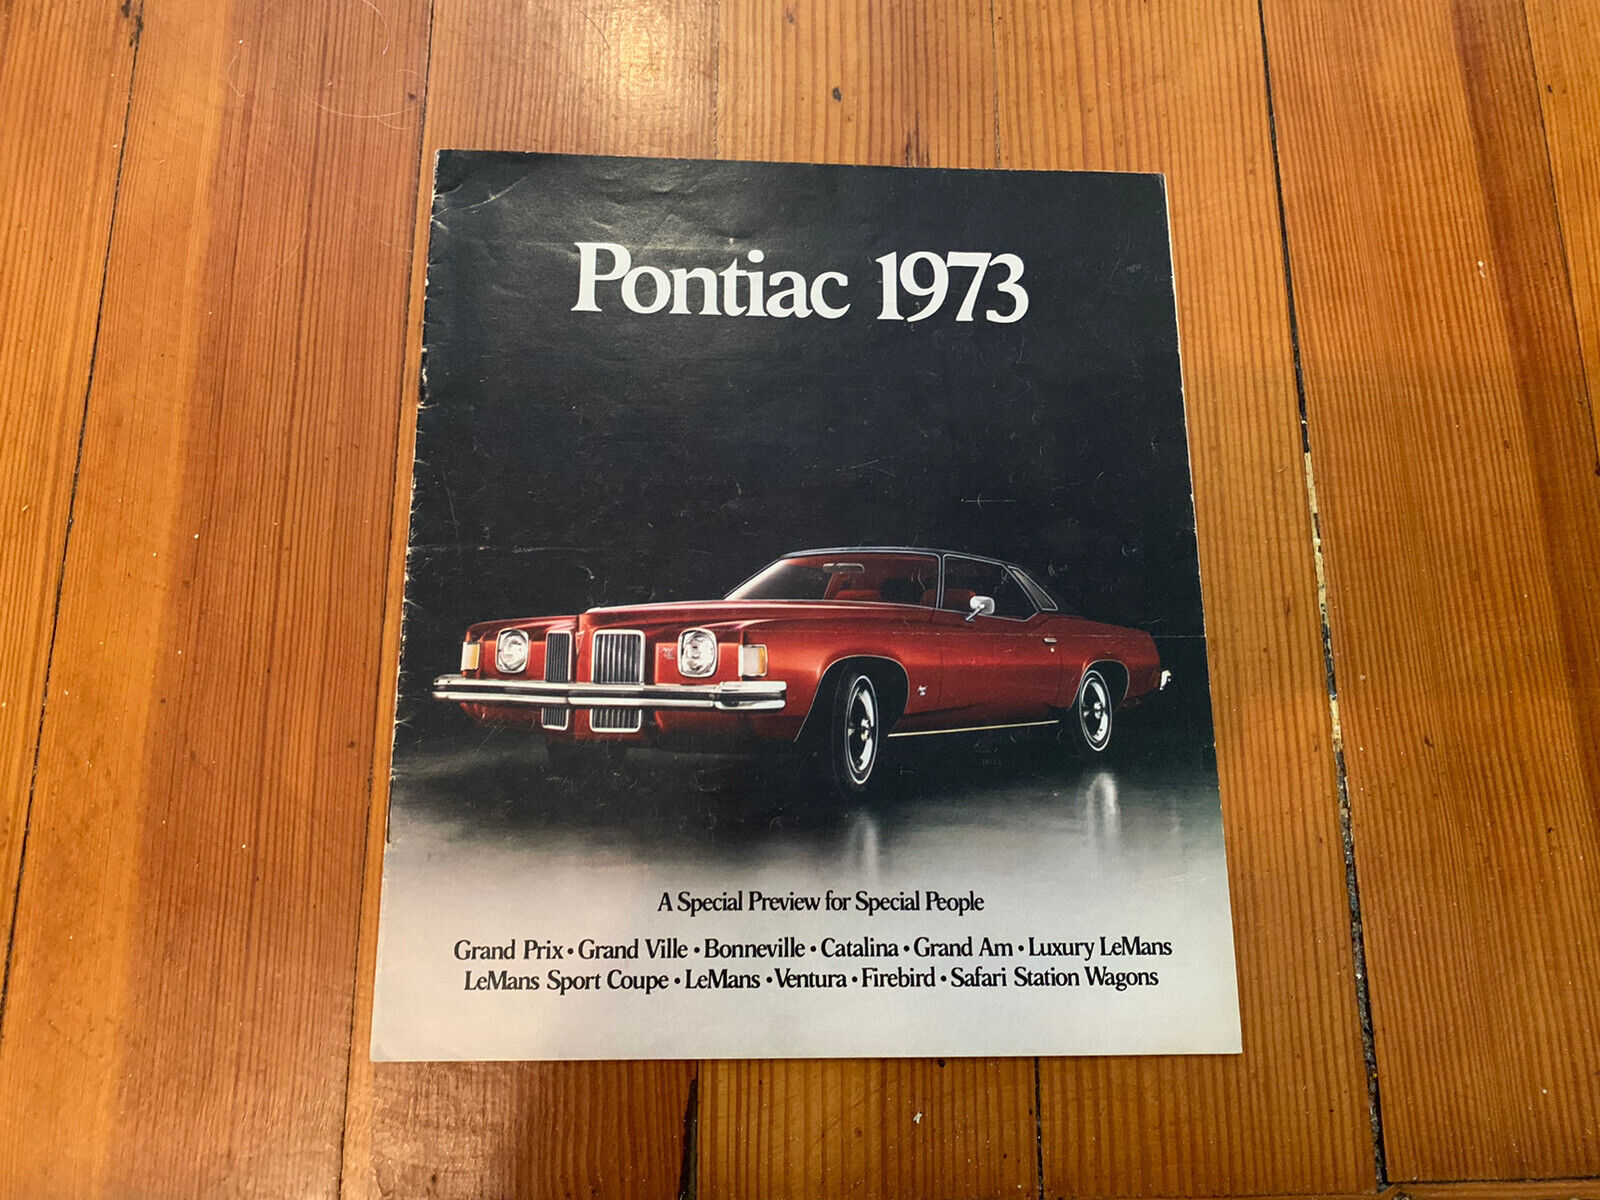 SPECIAL PREVIEW ORIGINAL 1973 PONTIAC GM BROCHURE GRAND PRIX BONNEVILLE LE MANS